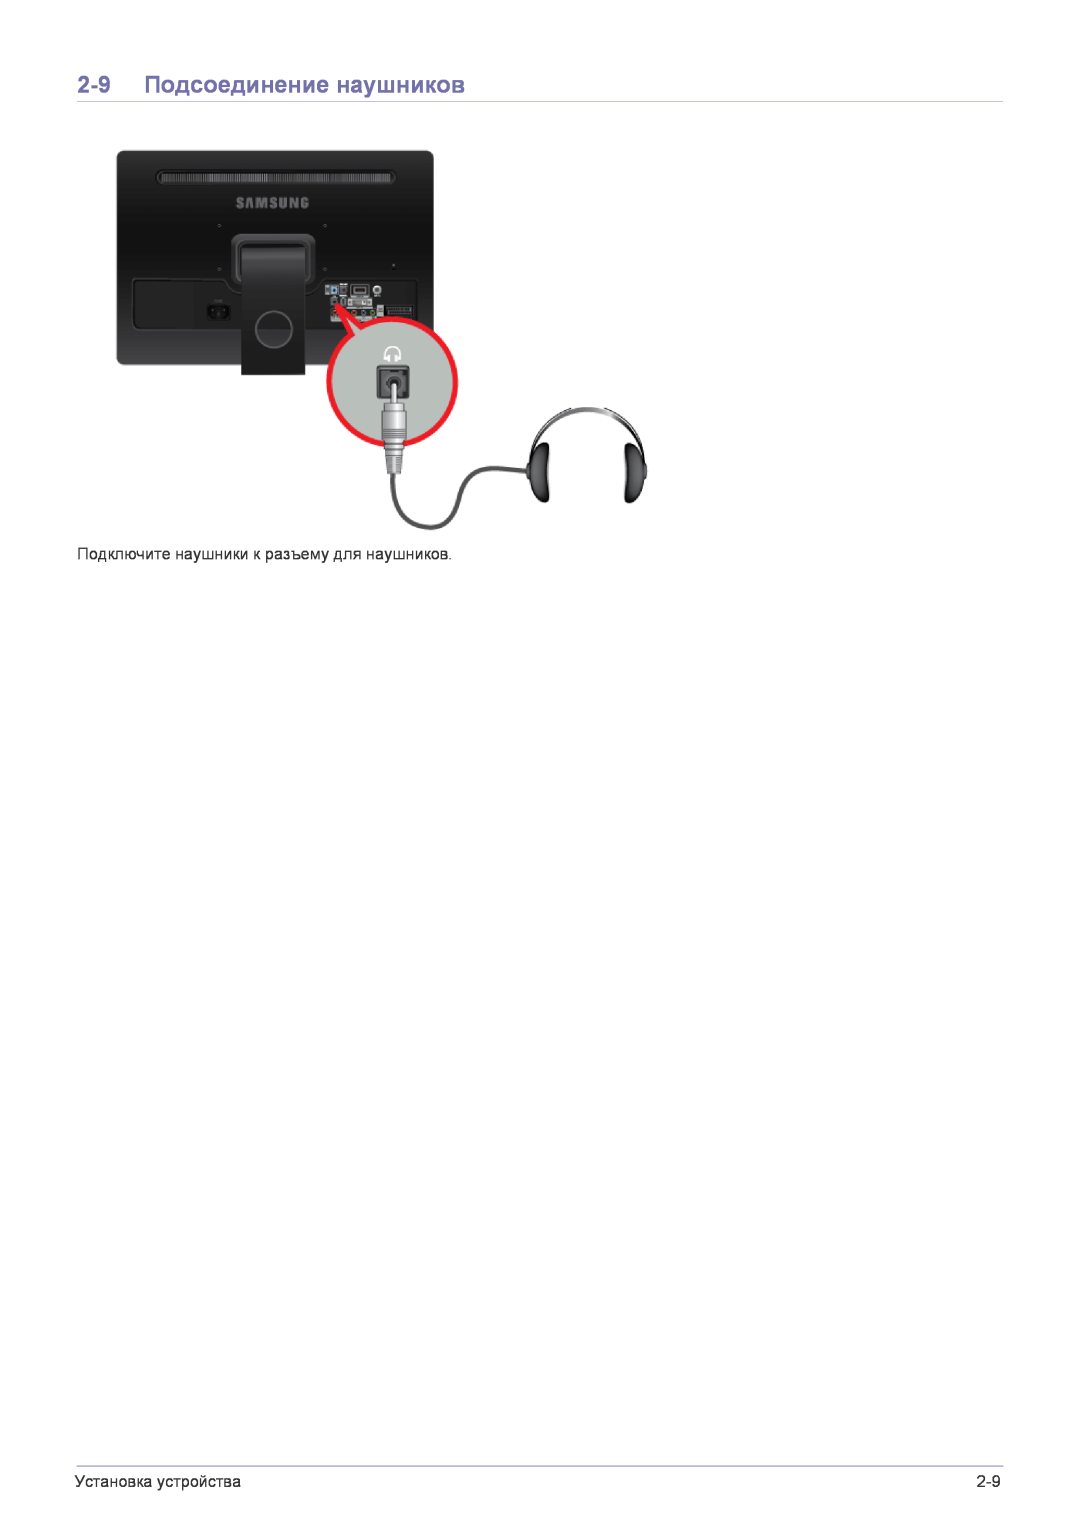 Samsung LS22FMDGF/EN manual 2-9 Подсоединение наушников, Подключите наушники к разъему для наушников, Установка устройства 